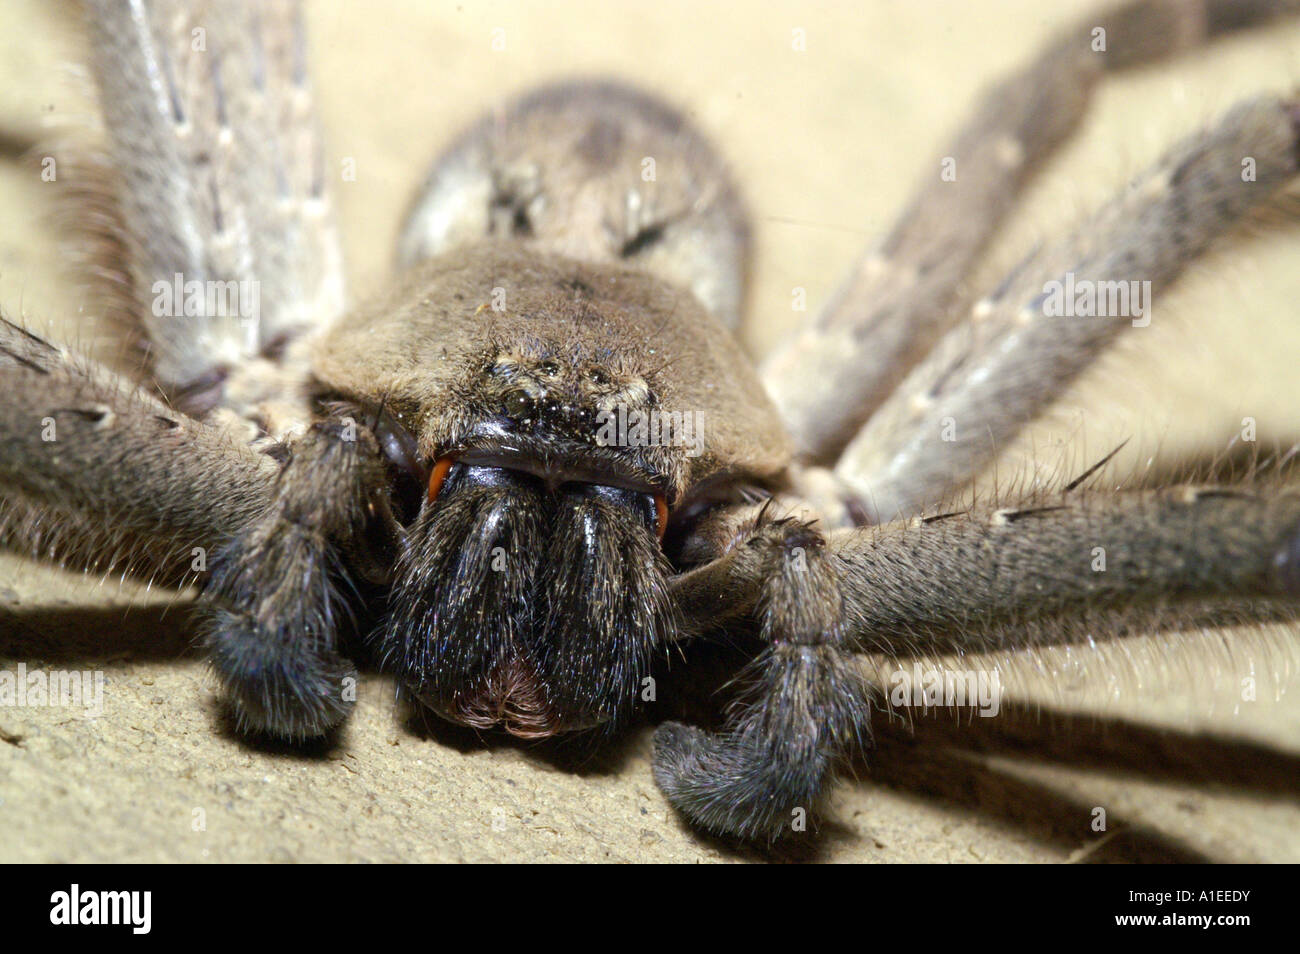 Macro closeup of large indian tarantula spider frontal view Stock Photo